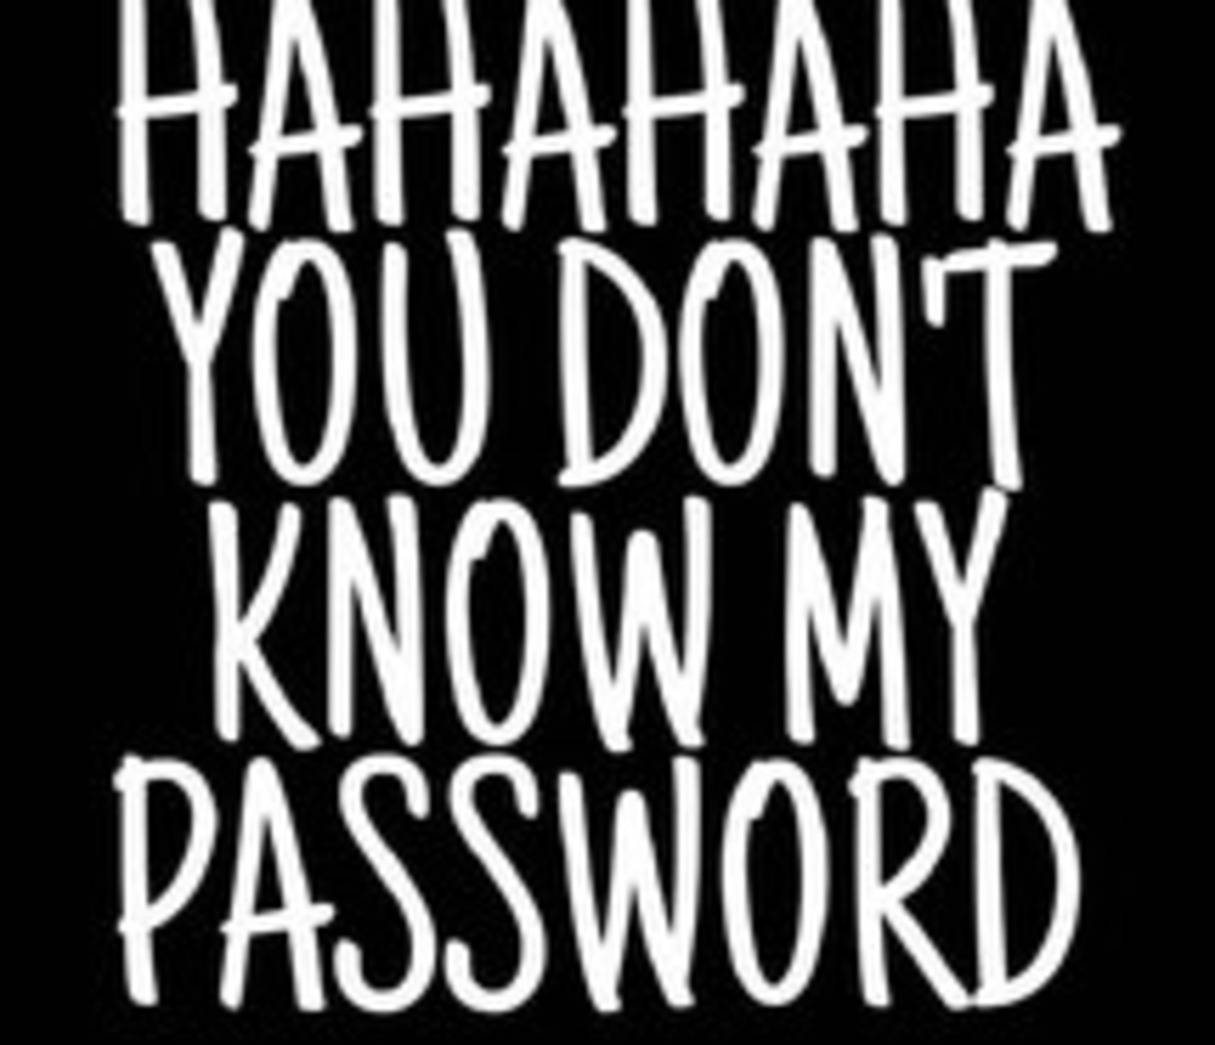 Hahaha,du Kennst Mein Passwort Nicht Wallpaper